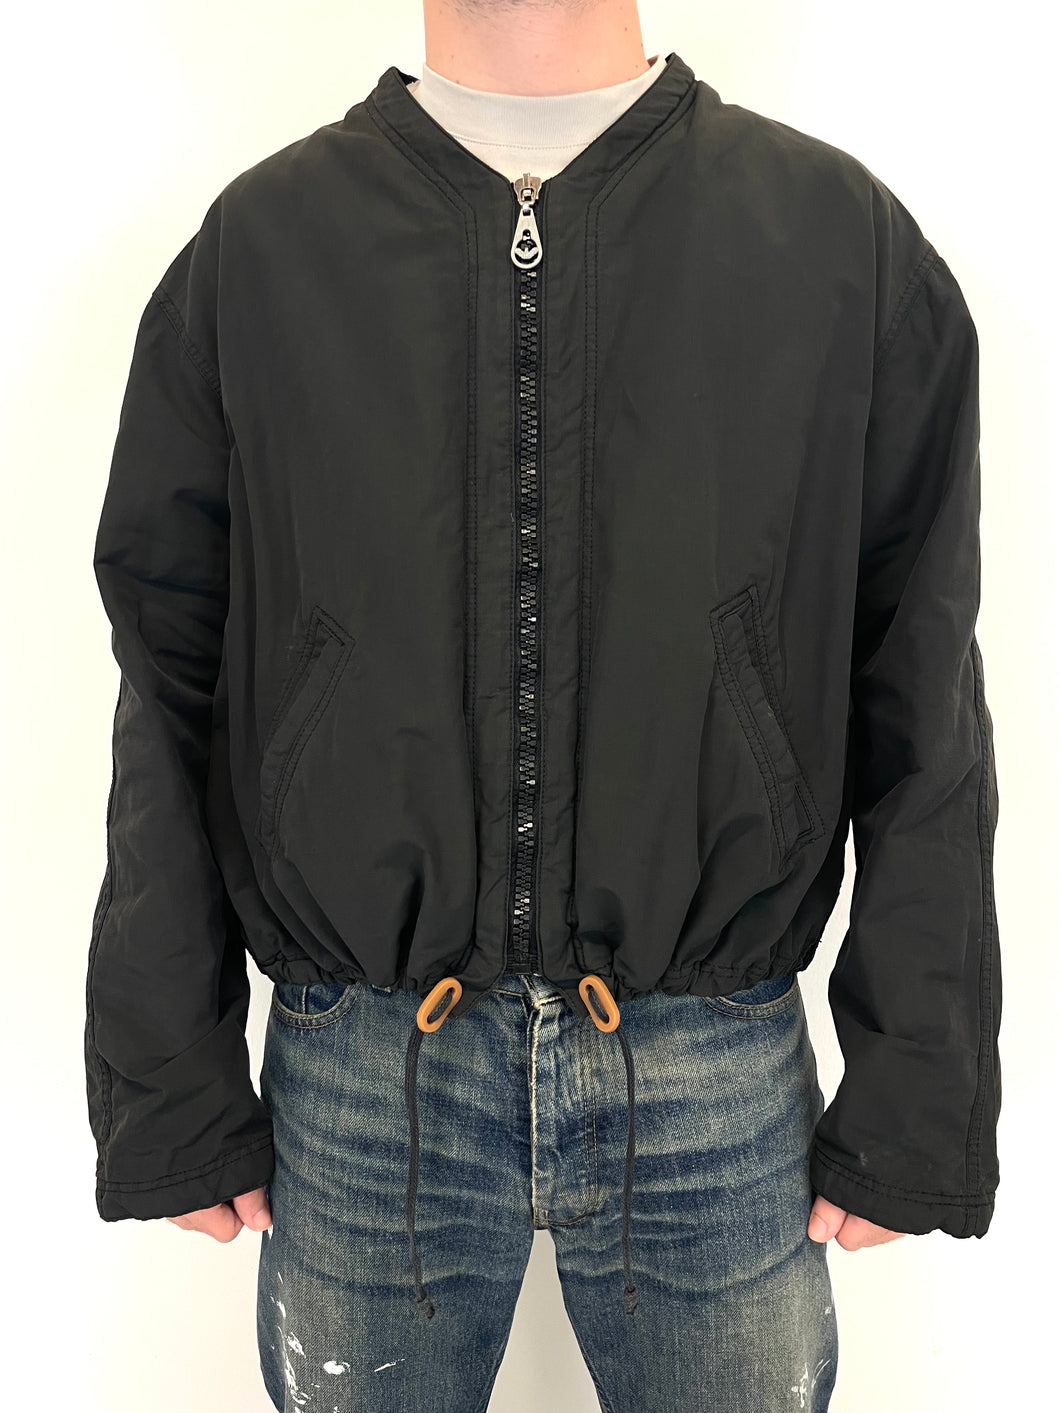 1993 Armani oversized cropped bomber jacket